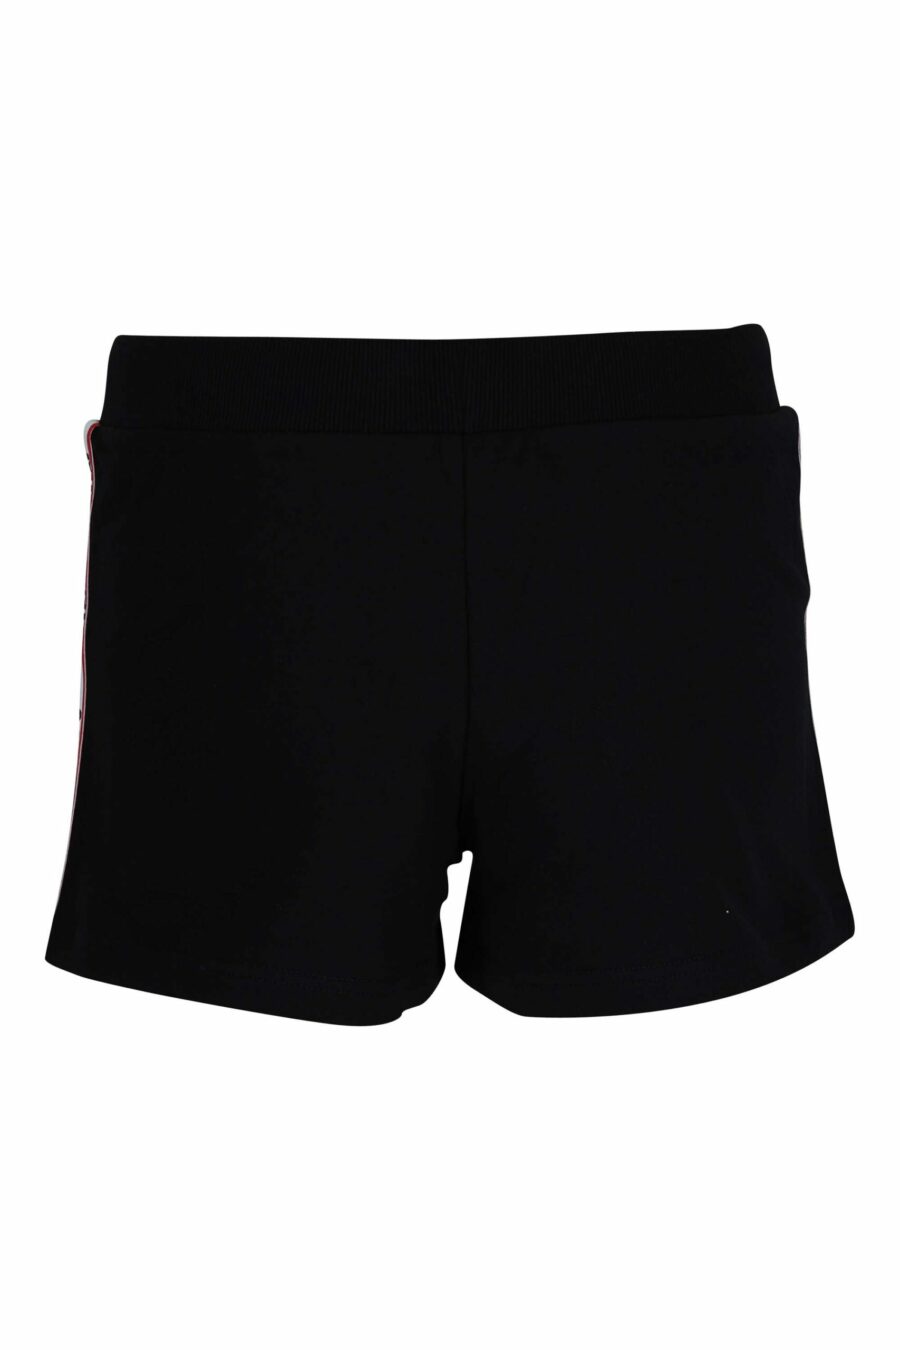 Shorts negros con logo en cinta negro con detalles rojo lateral - 667113353623 1 scaled